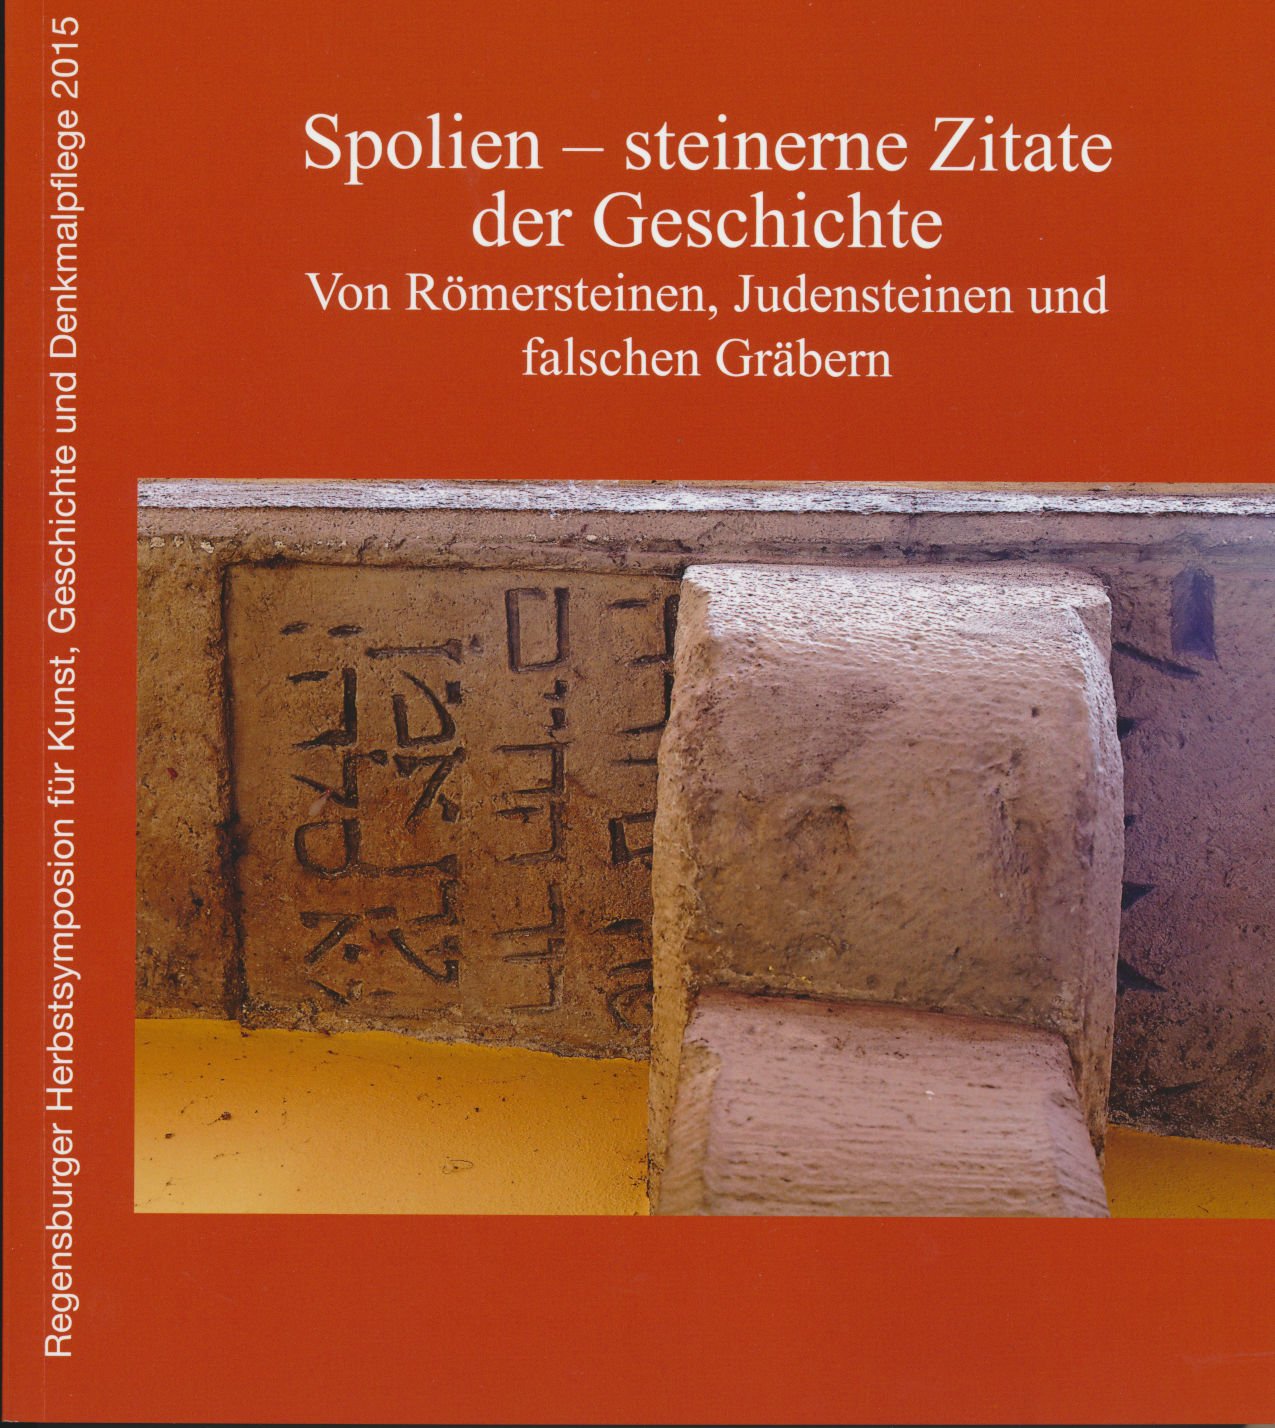 ISBN "Spolien – steinerne Zitate der Geschichte Von Römersteinen Judensteinen und falschen